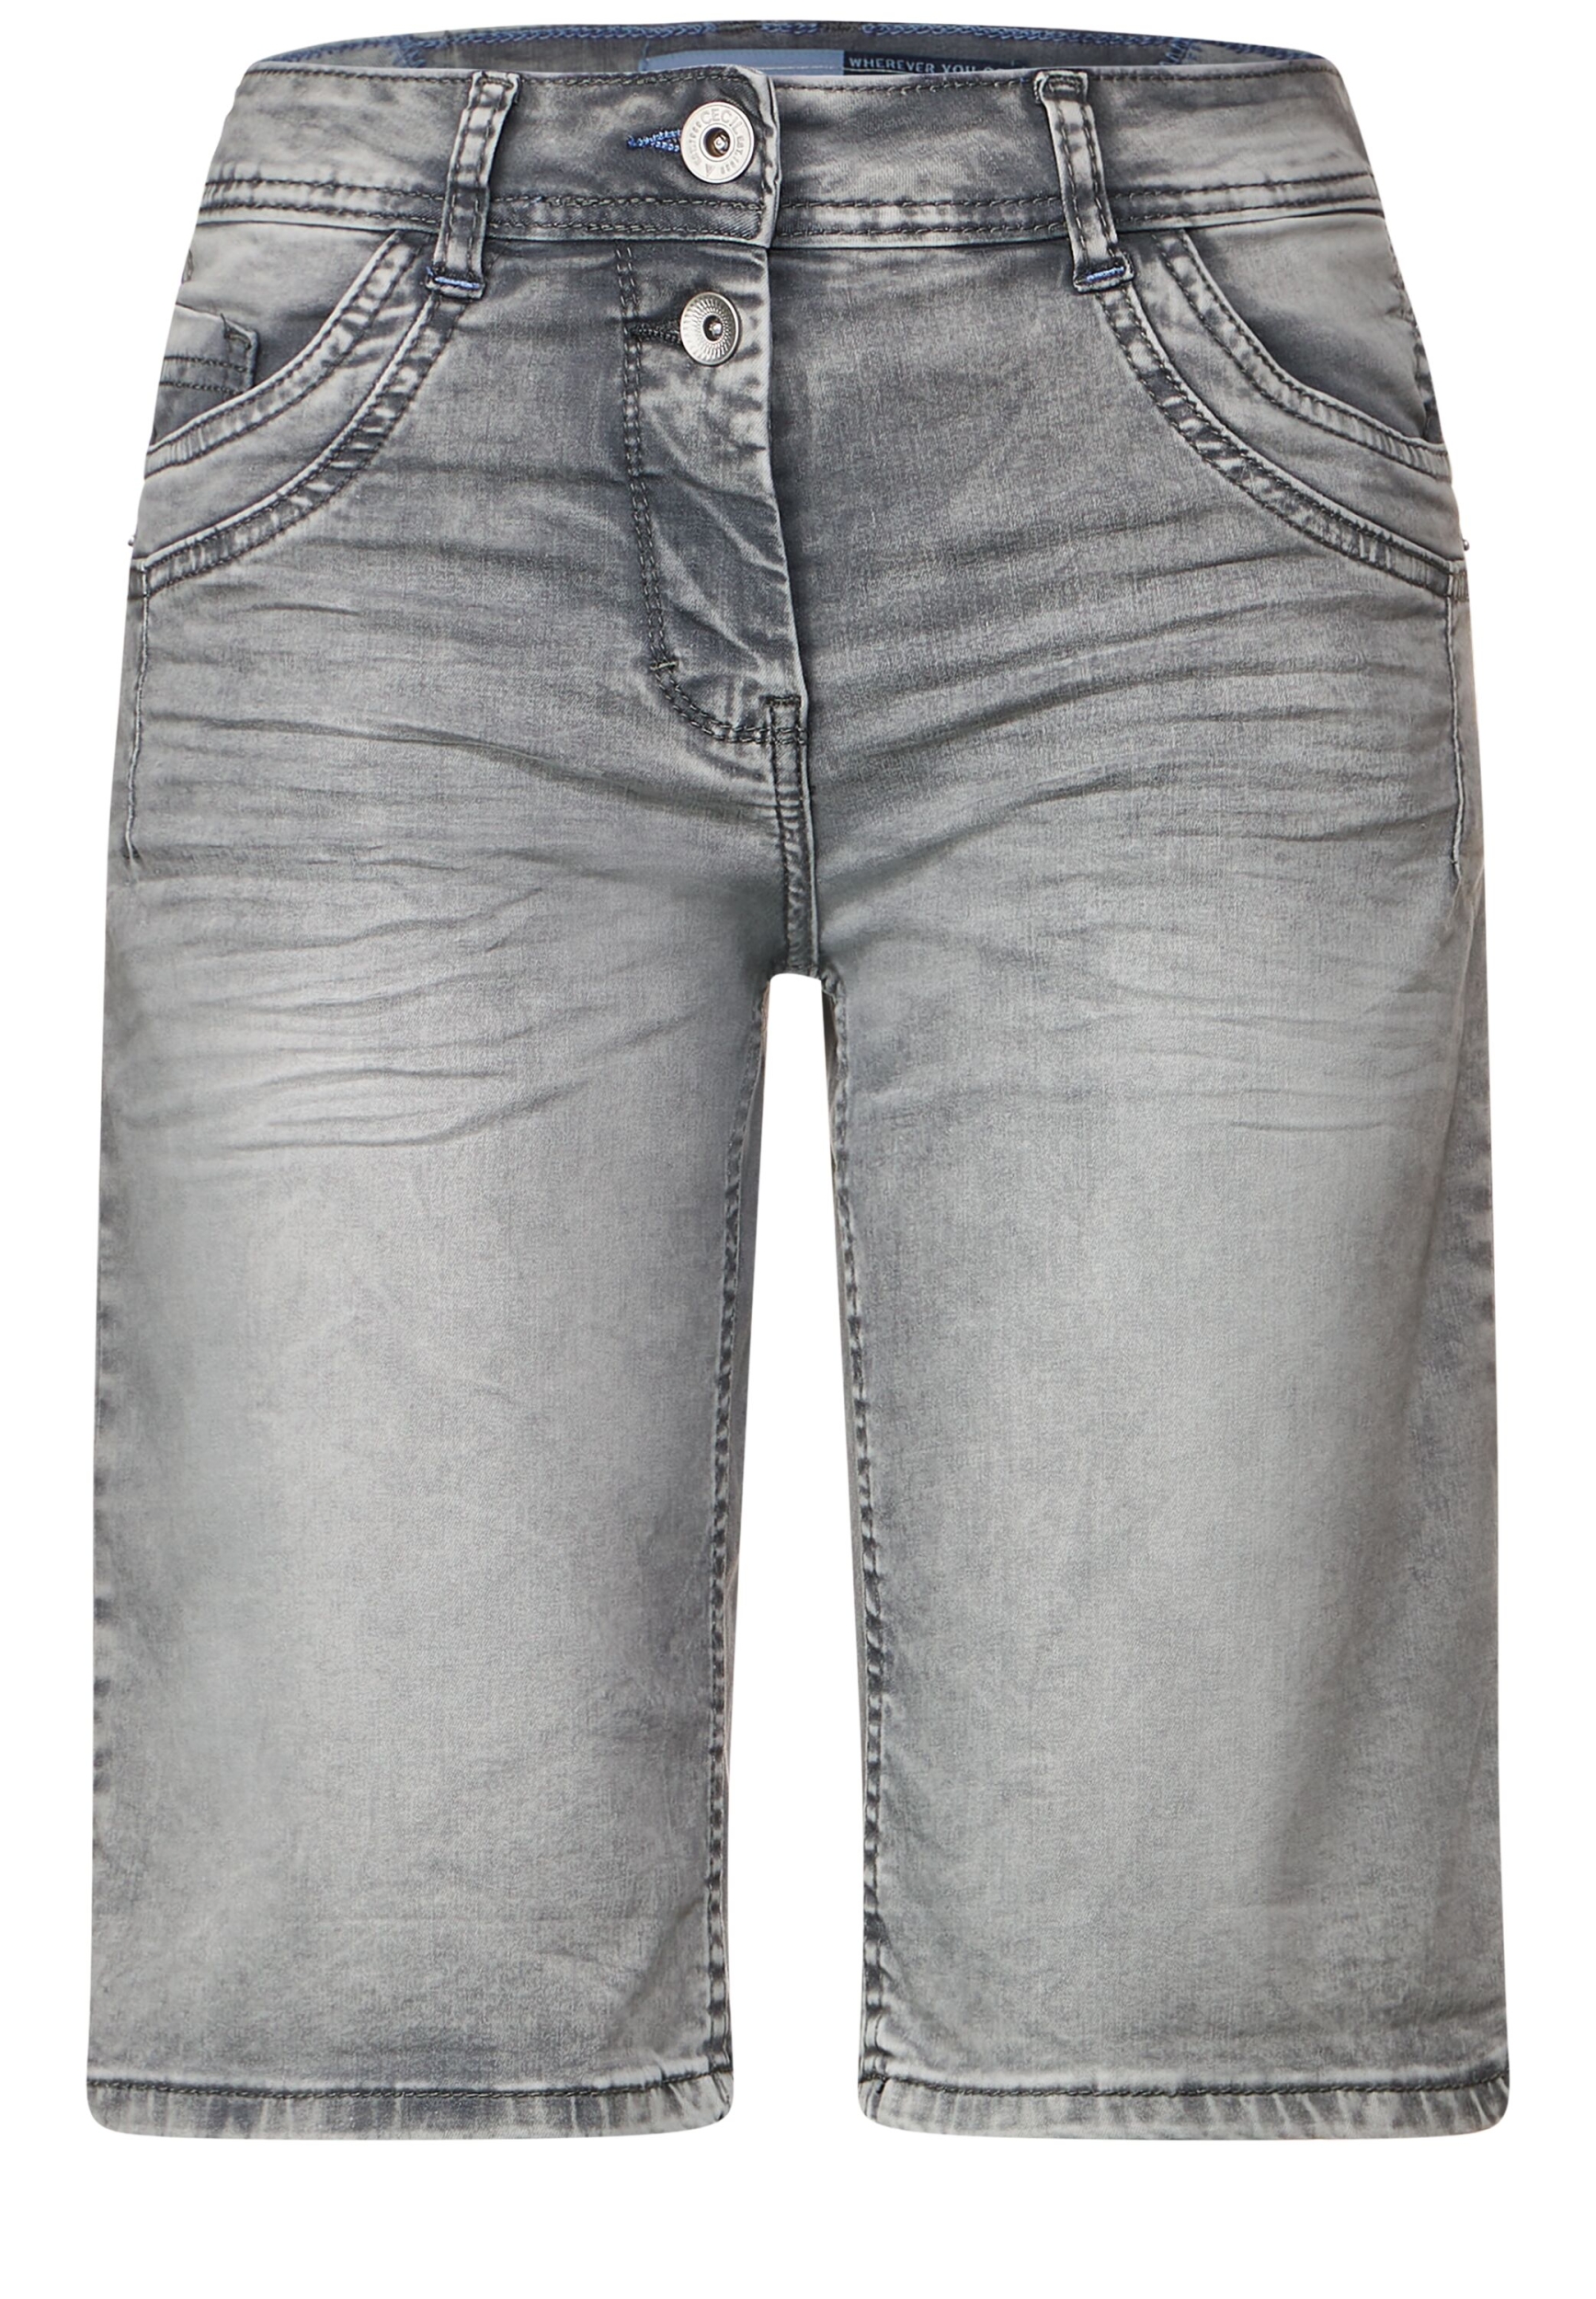 grey washed | B376016-10573-34 34 Shorts | Style | NOS Grey Scarlett